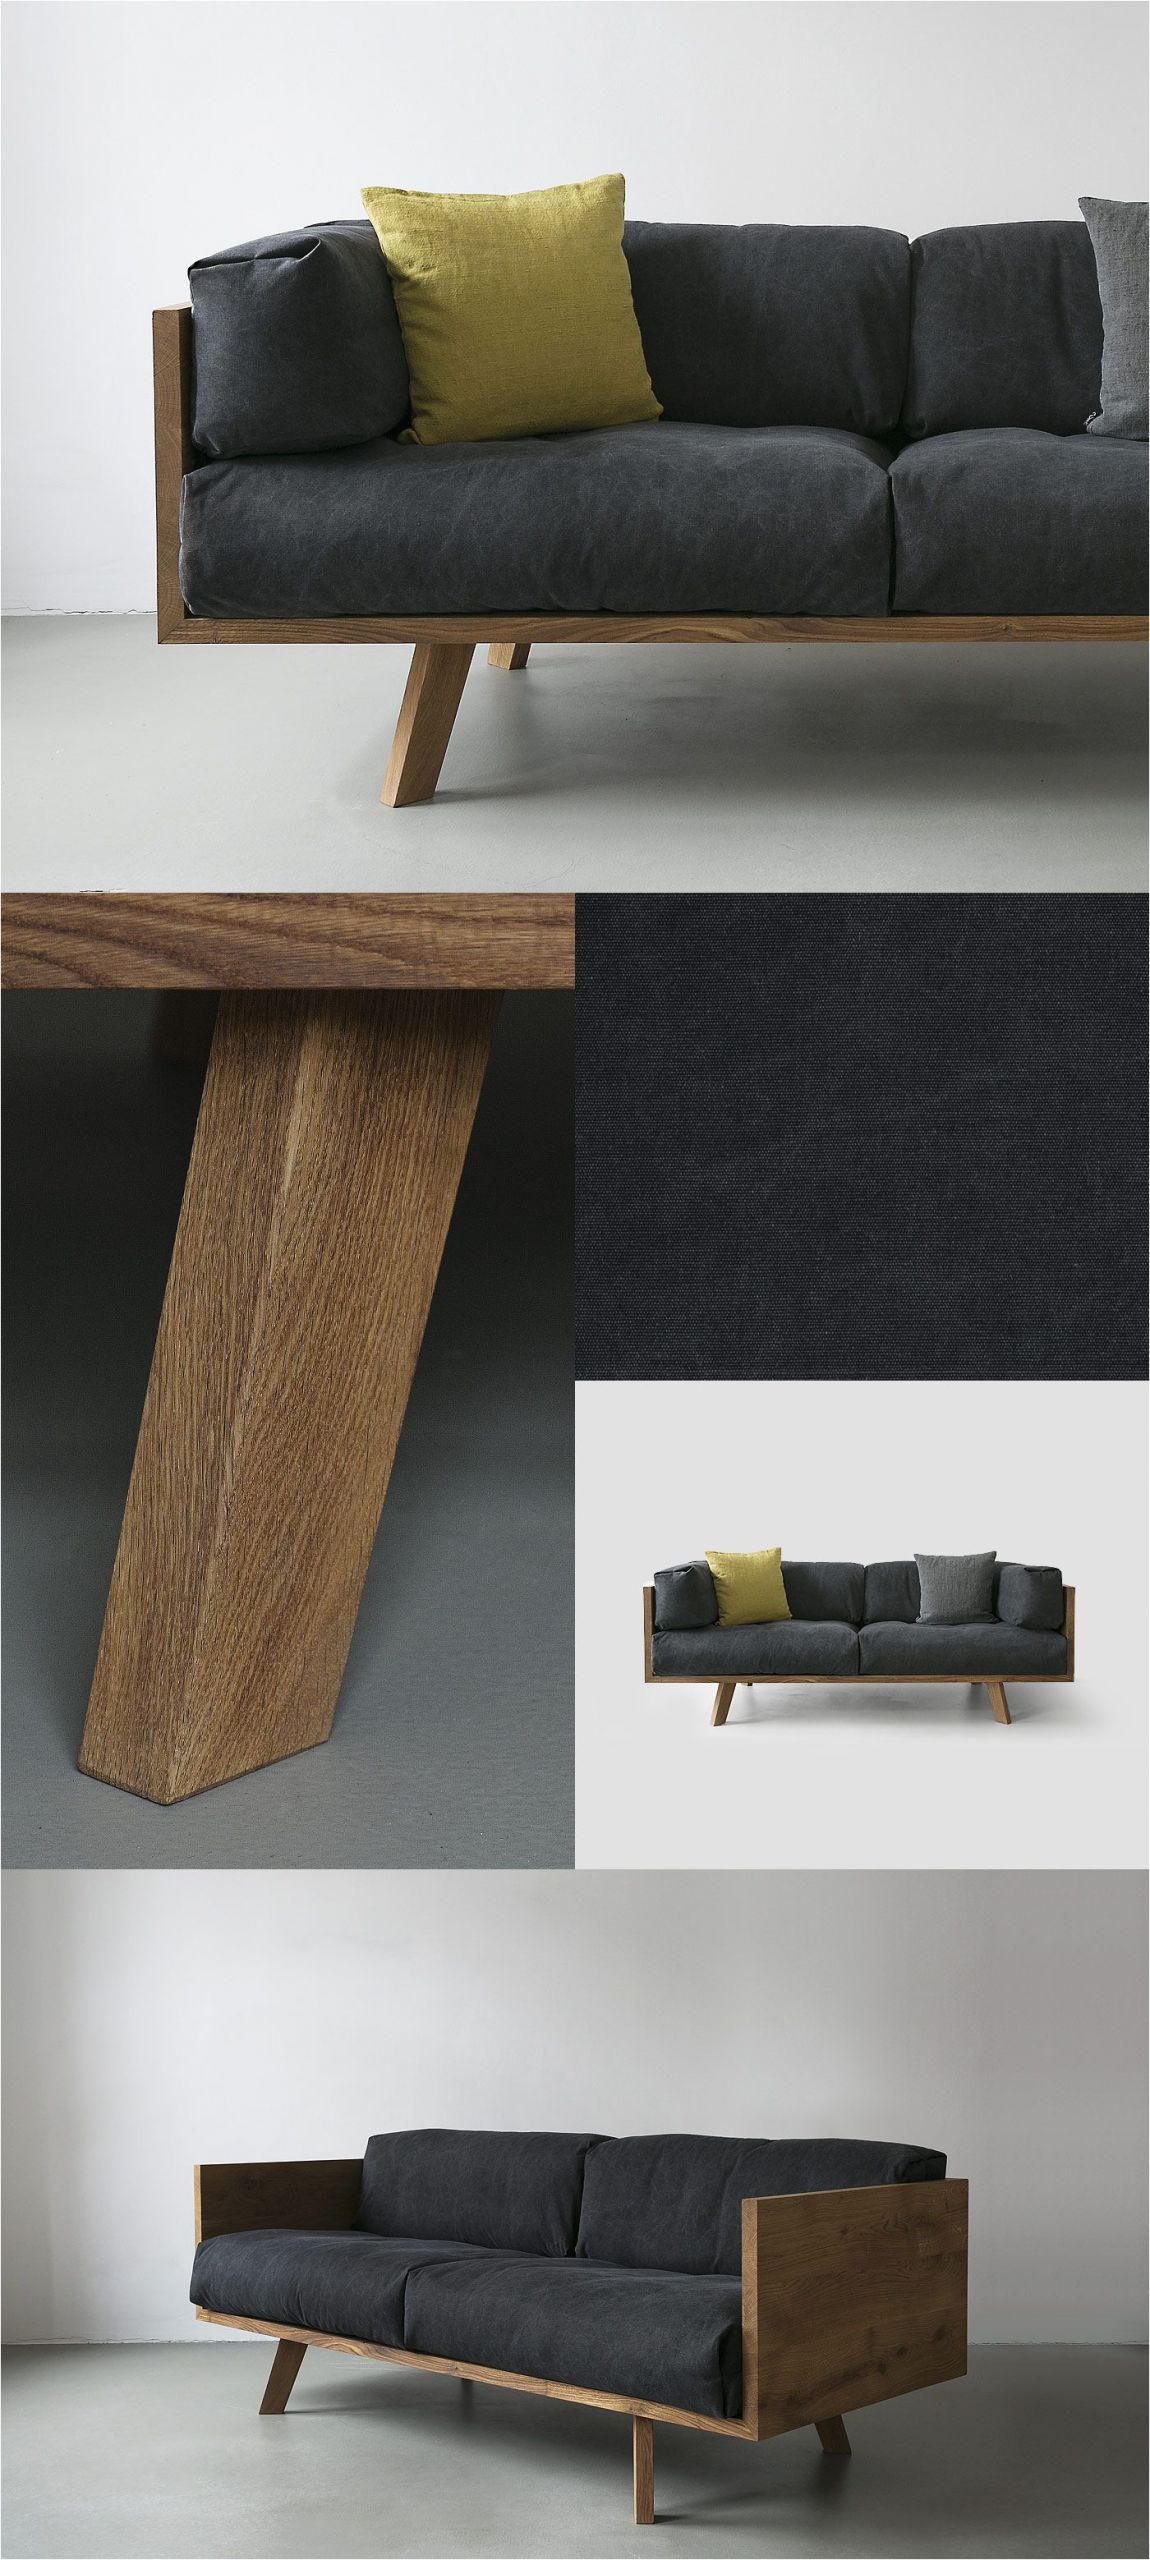 Sofa Design Single Diy Furniture I Möbel Selber Bauen I Couch sofa Daybed I